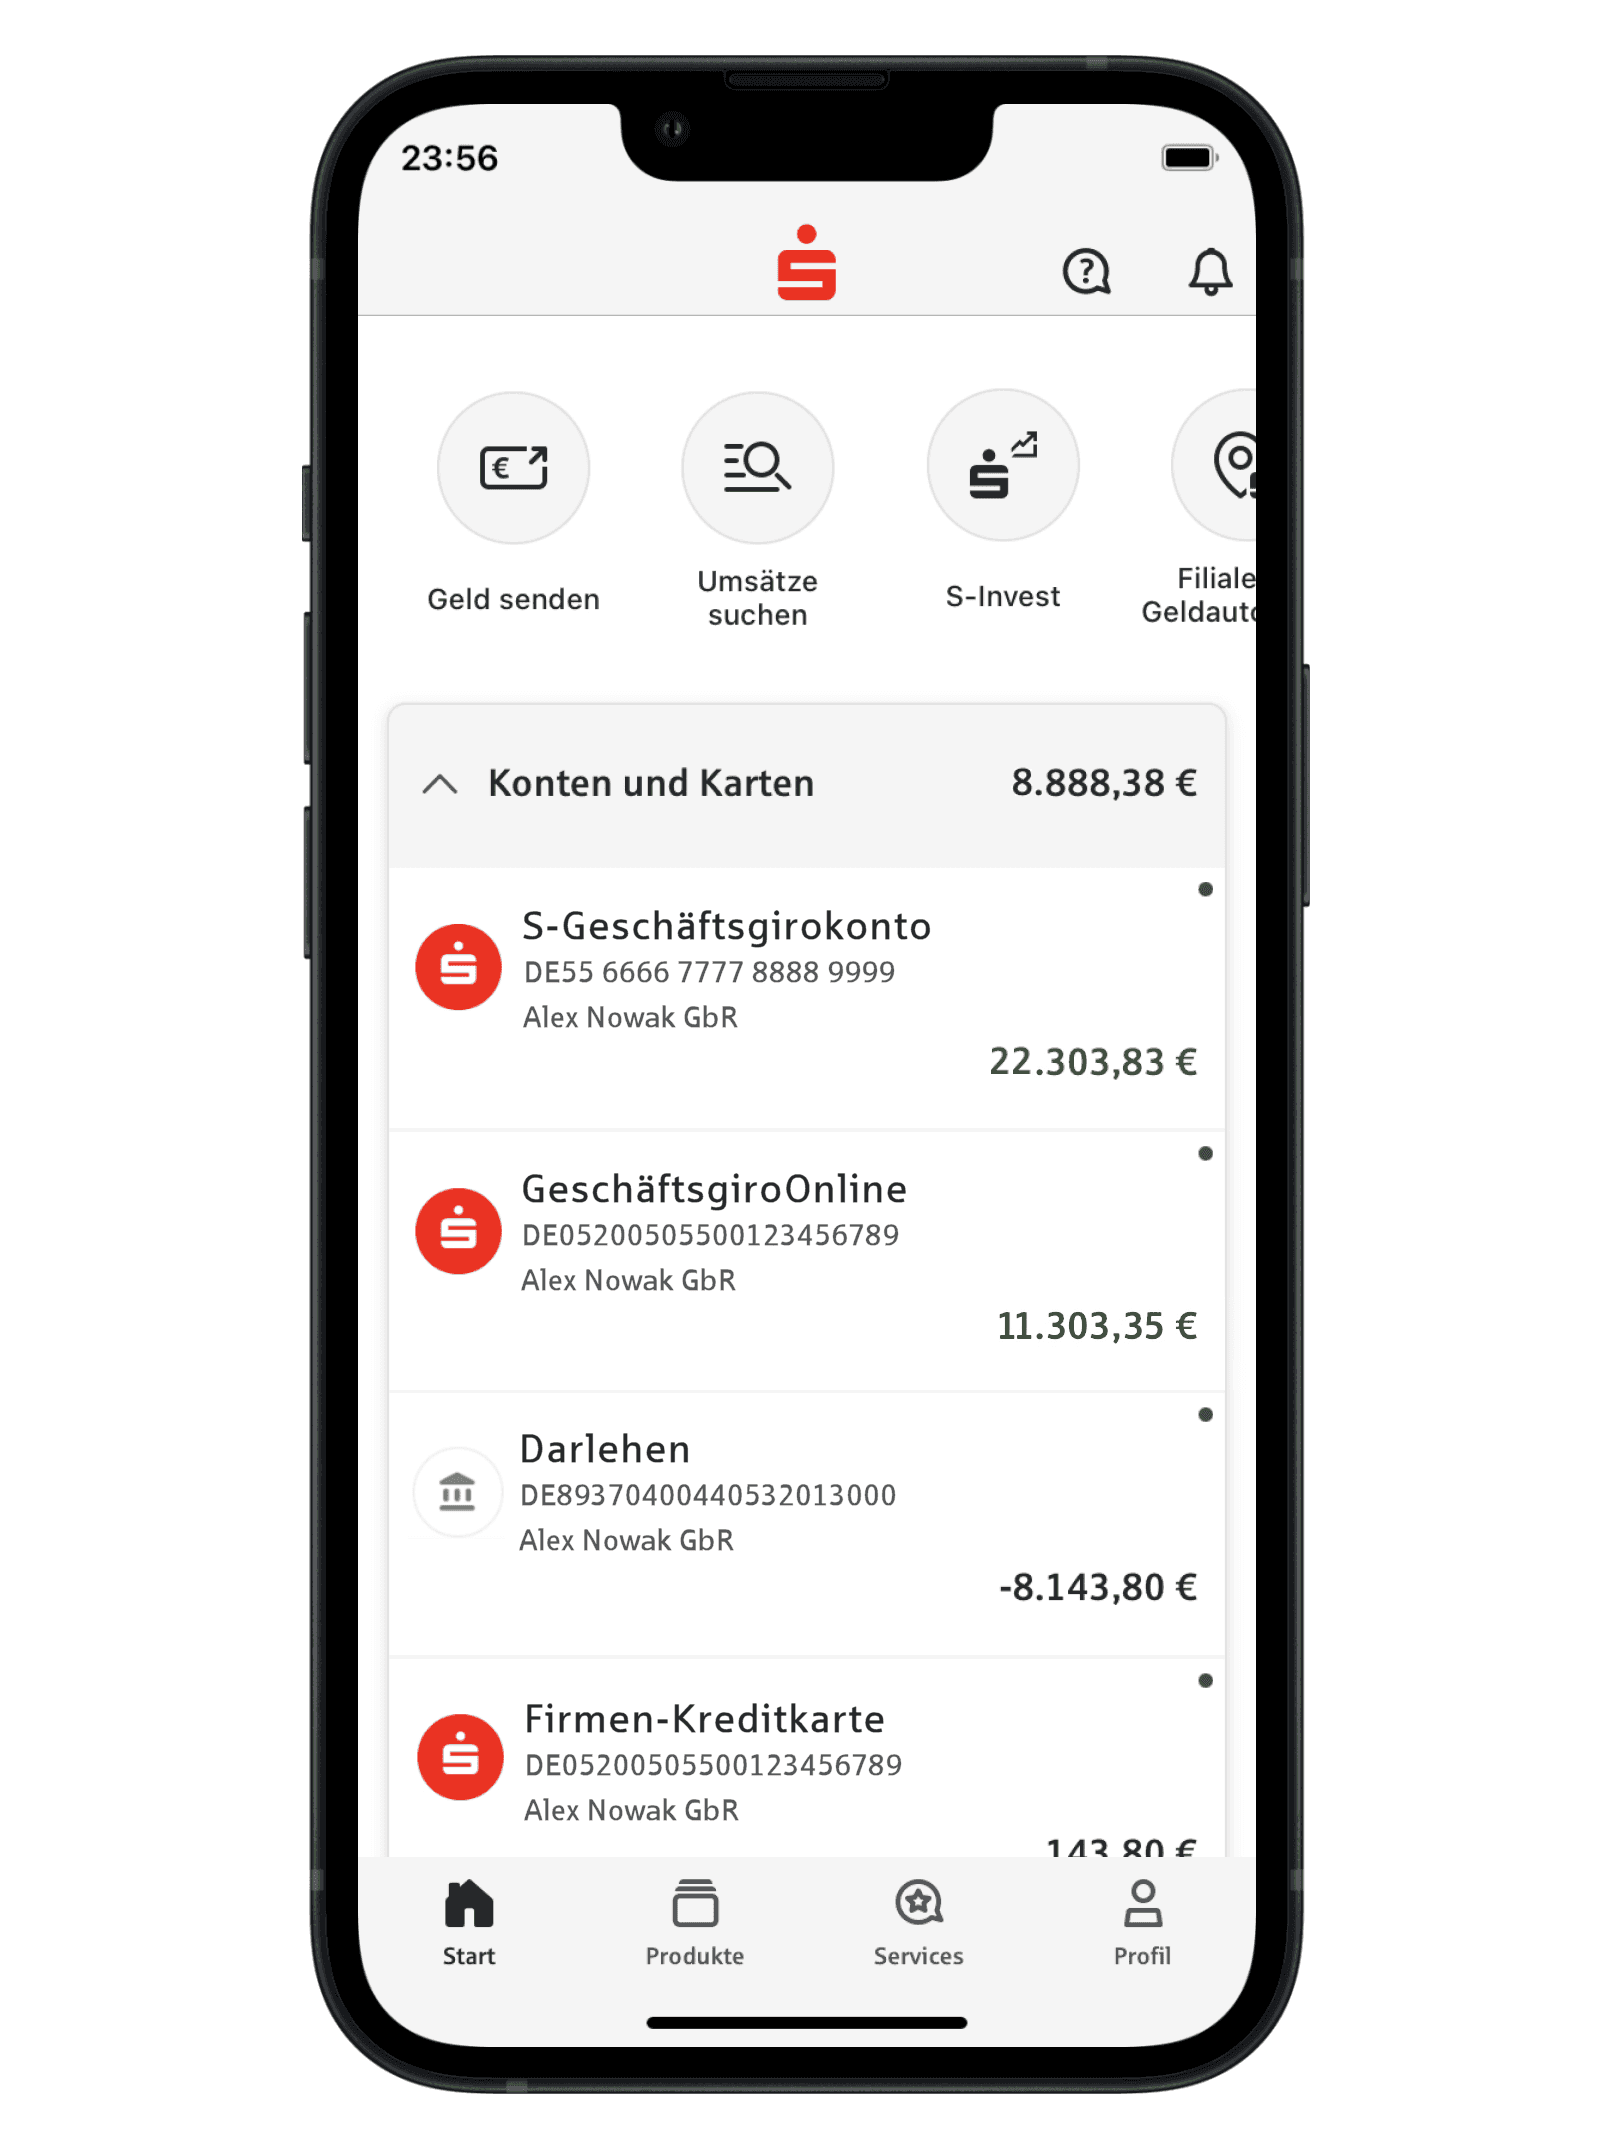 Ein transparent hinterlegter Smartphone-Display mit der Oberfläche der Sparkassen-Business-App. Auf dem Bildschirm sind neben dem Sparkassensymbol die verschiedenen Konten und Karten und deren Soll oder Haben zu sehen.